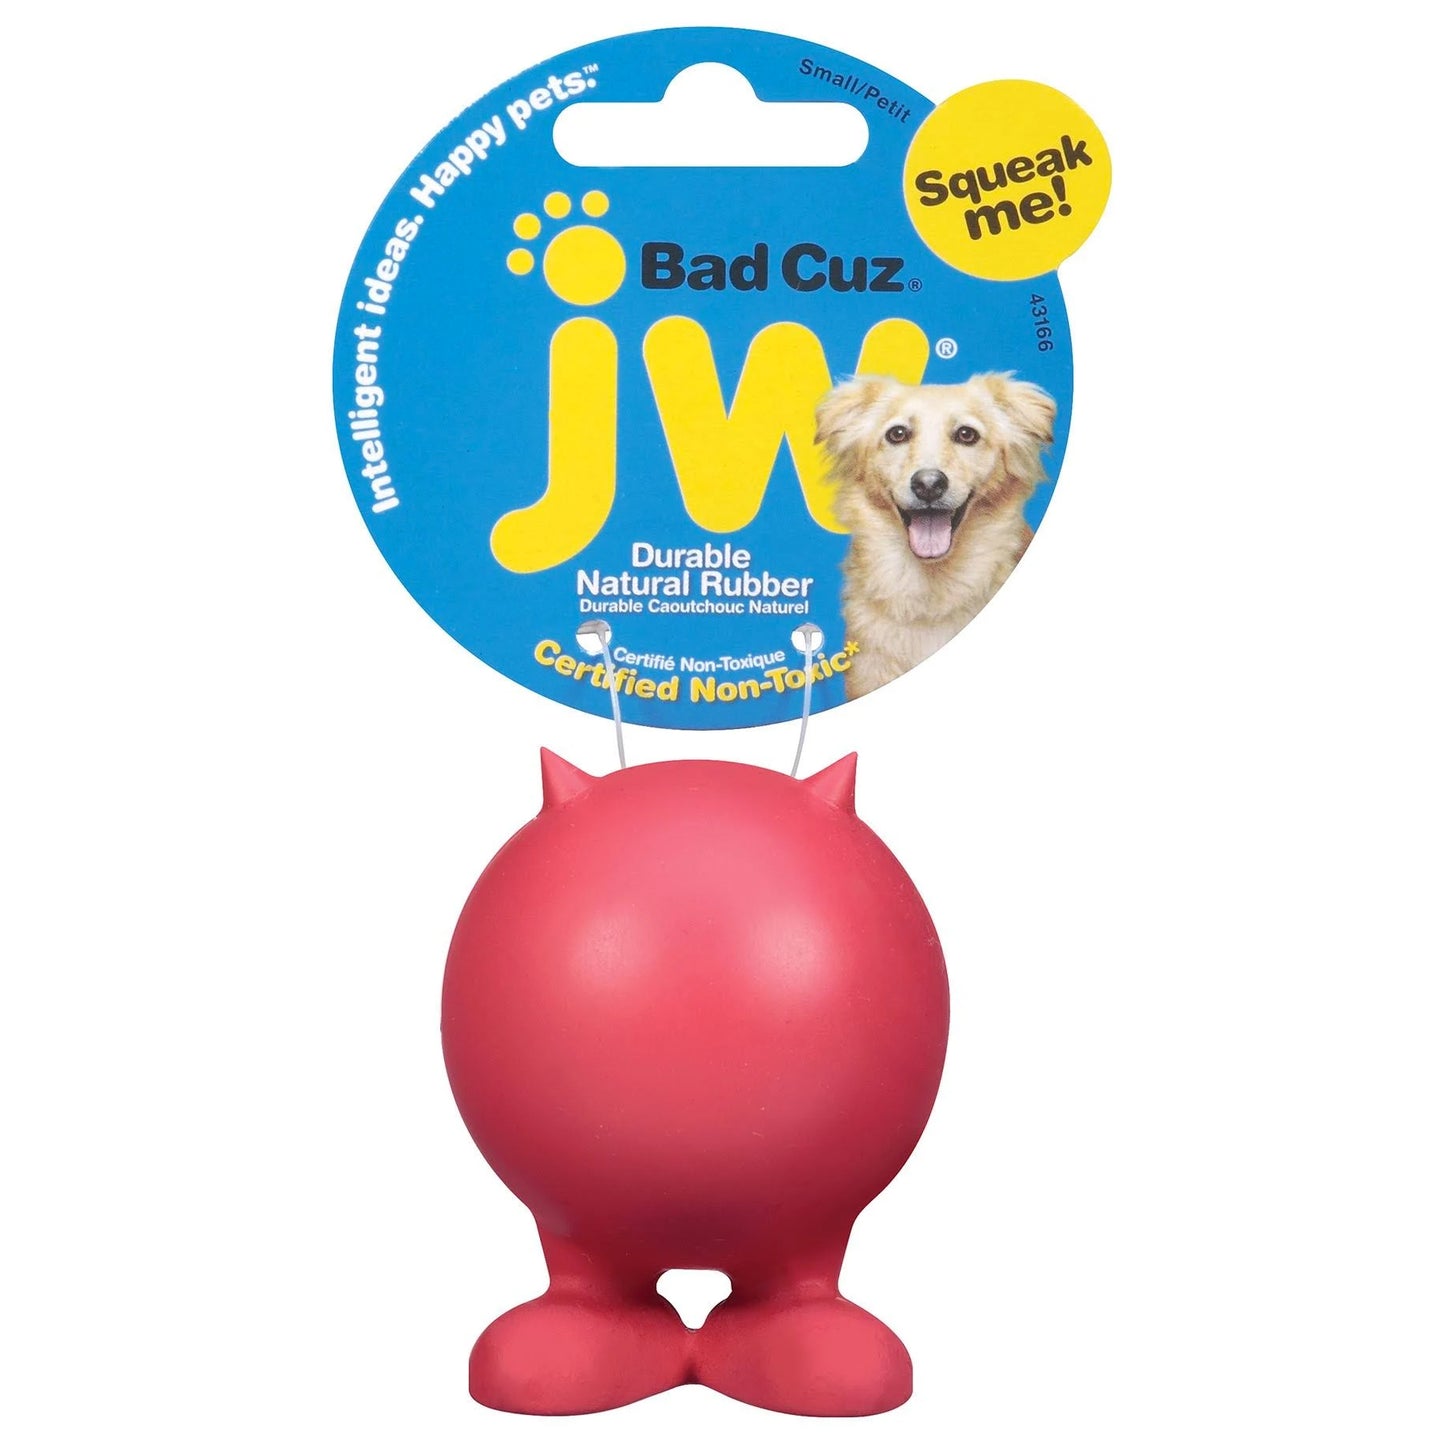 JW Bad Cuz Chew Toy  Image